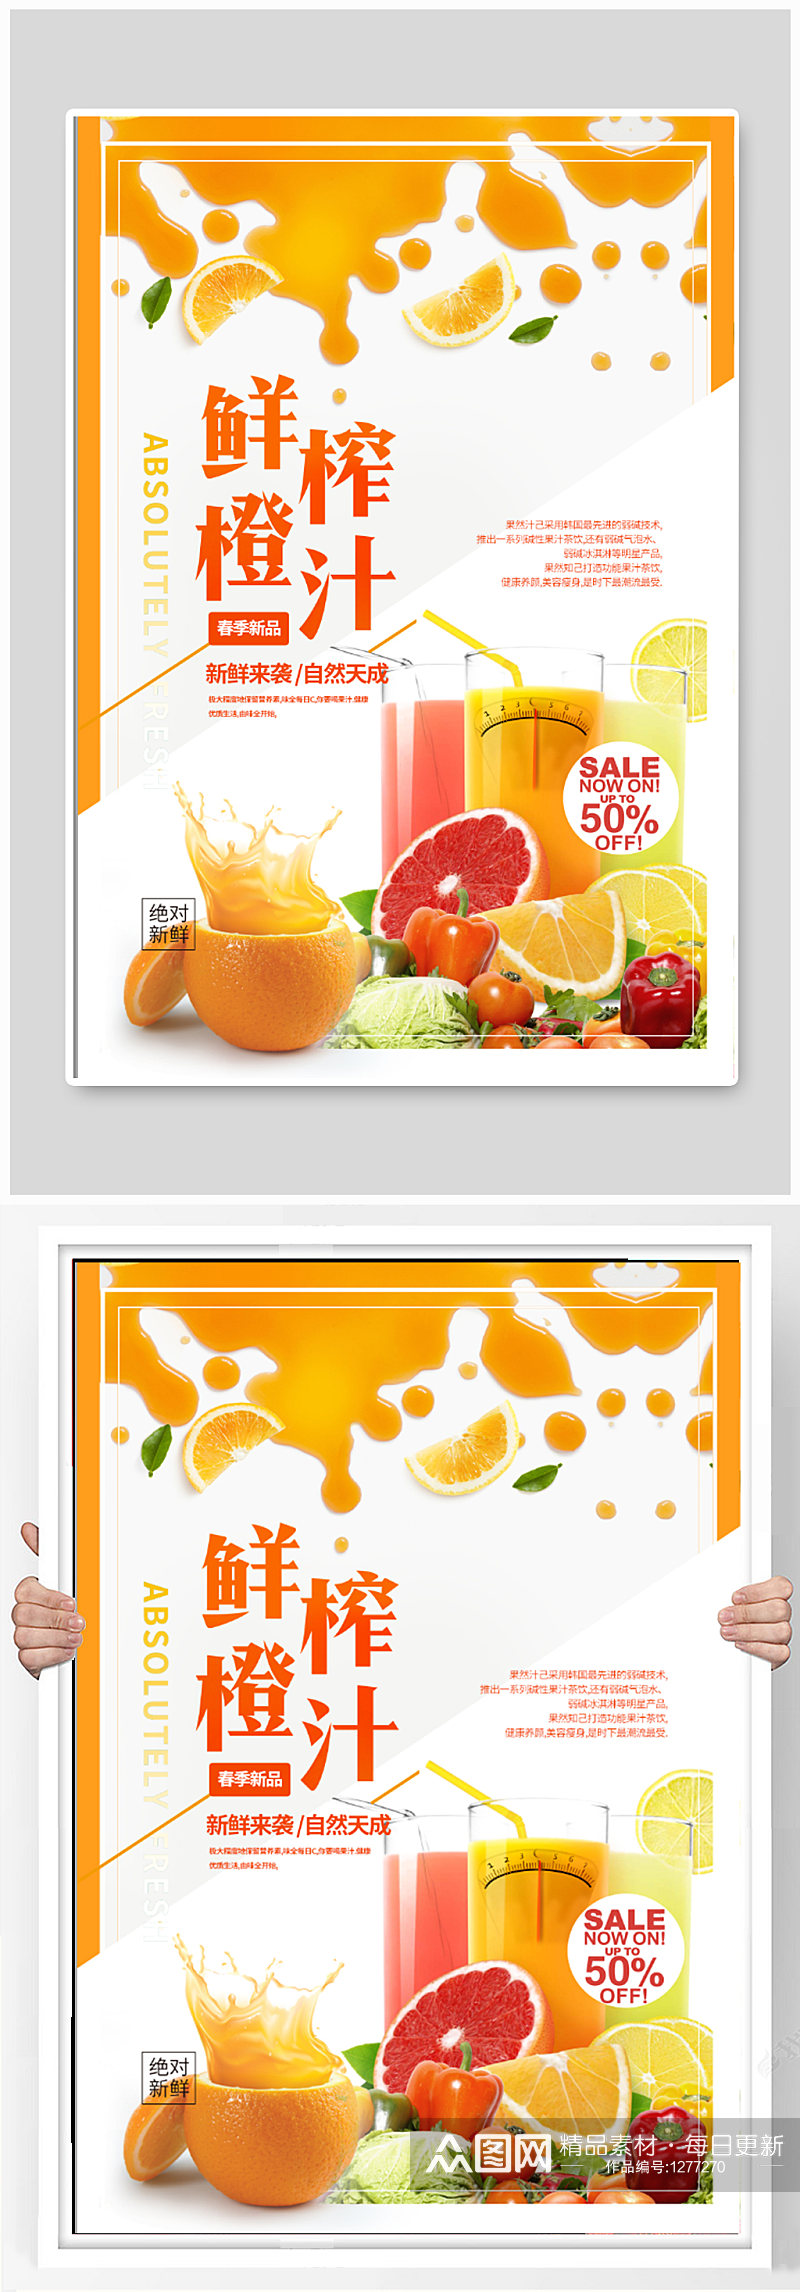 鲜榨橙汁饮品海报素材